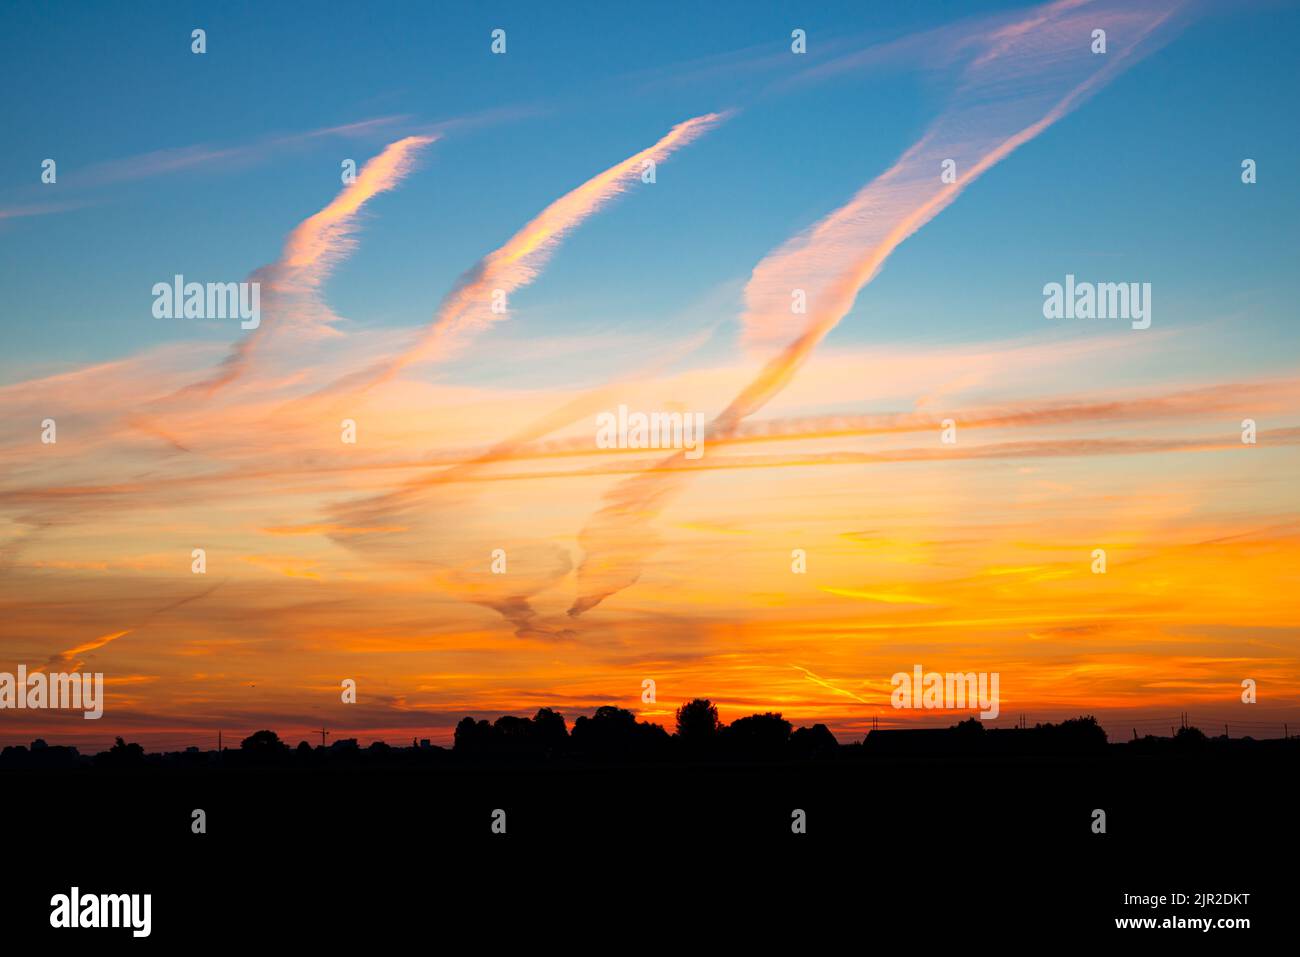 Wasserdampfspuren von Flugzeugen, auch als Kondensstreifen bekannt, werden durch die untergehende Sonne wunderschön gefärbt Stockfoto